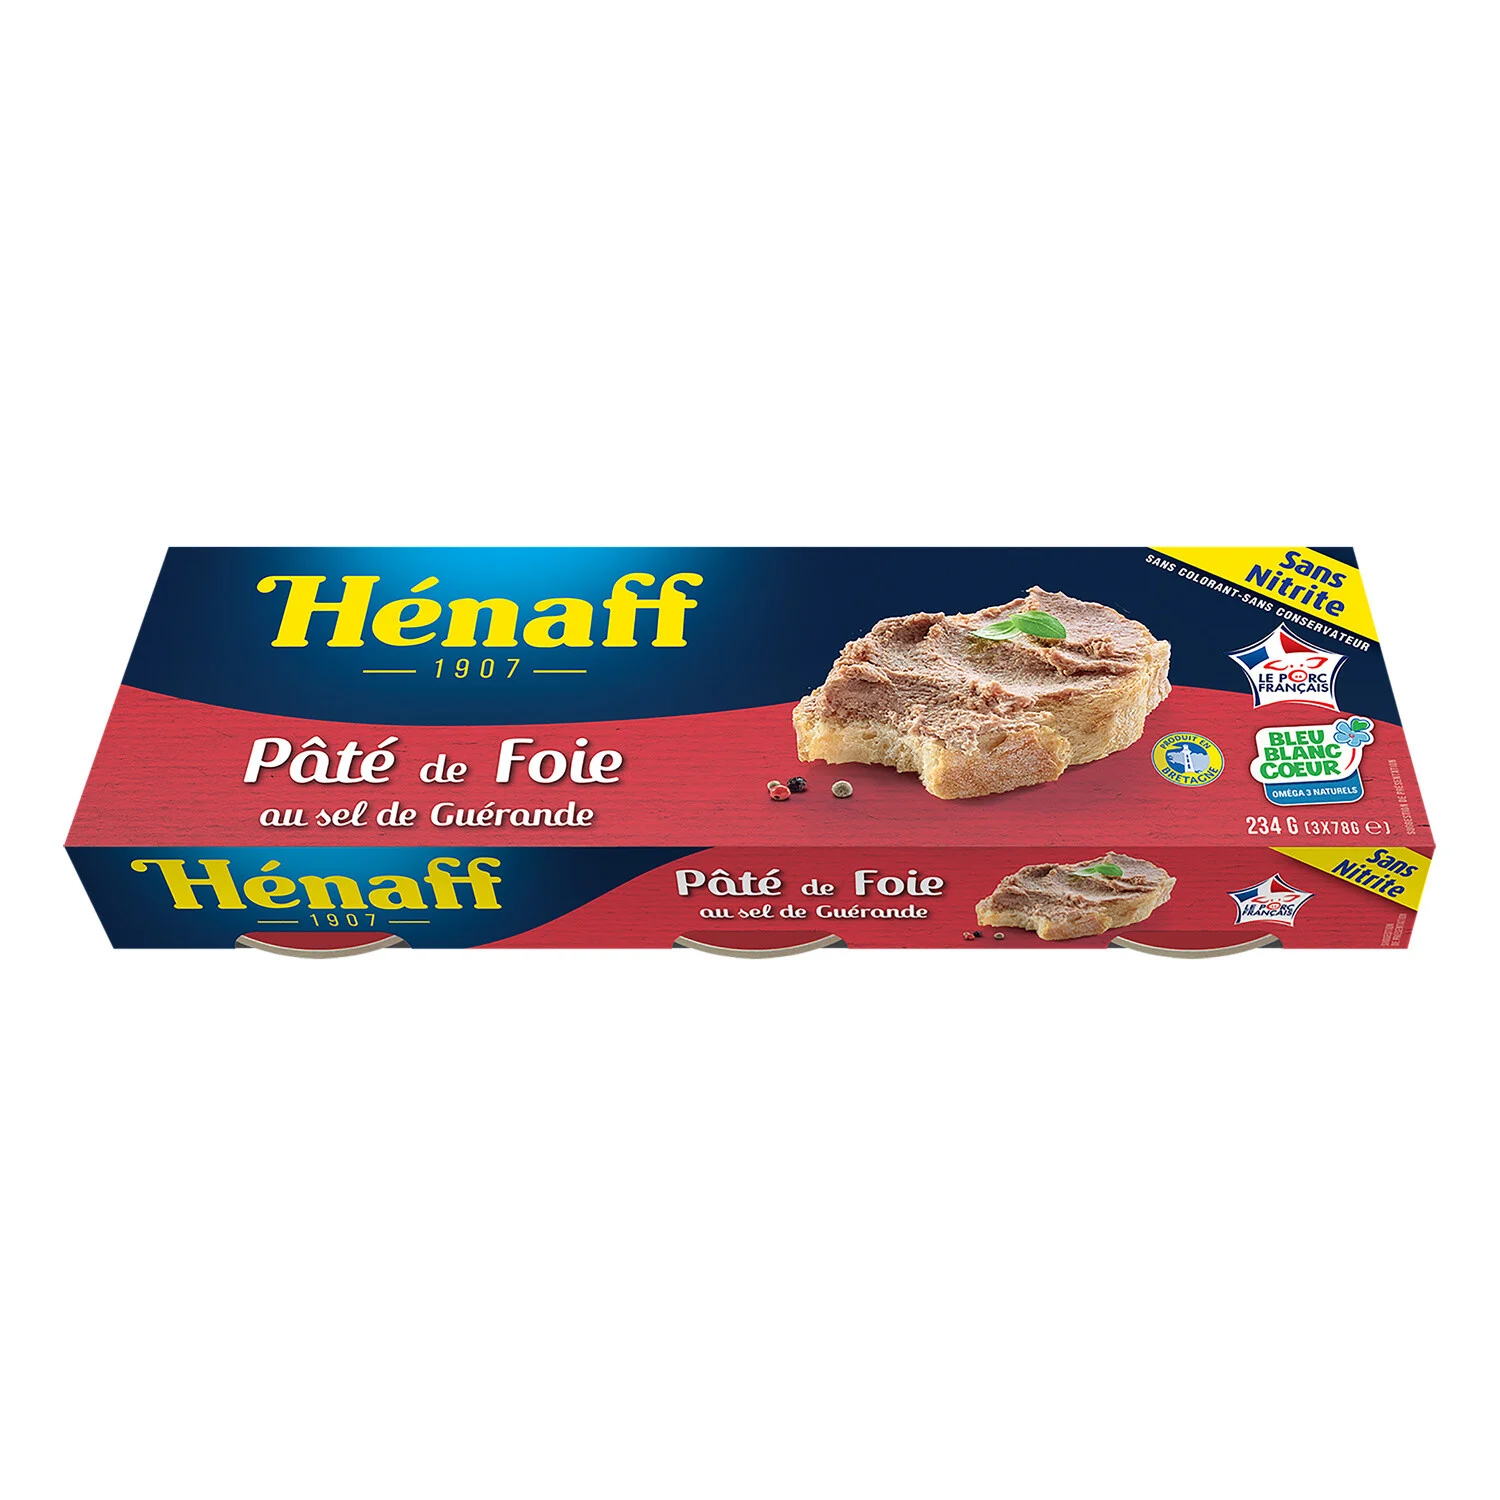 3x1 10 Pate foie Henaff